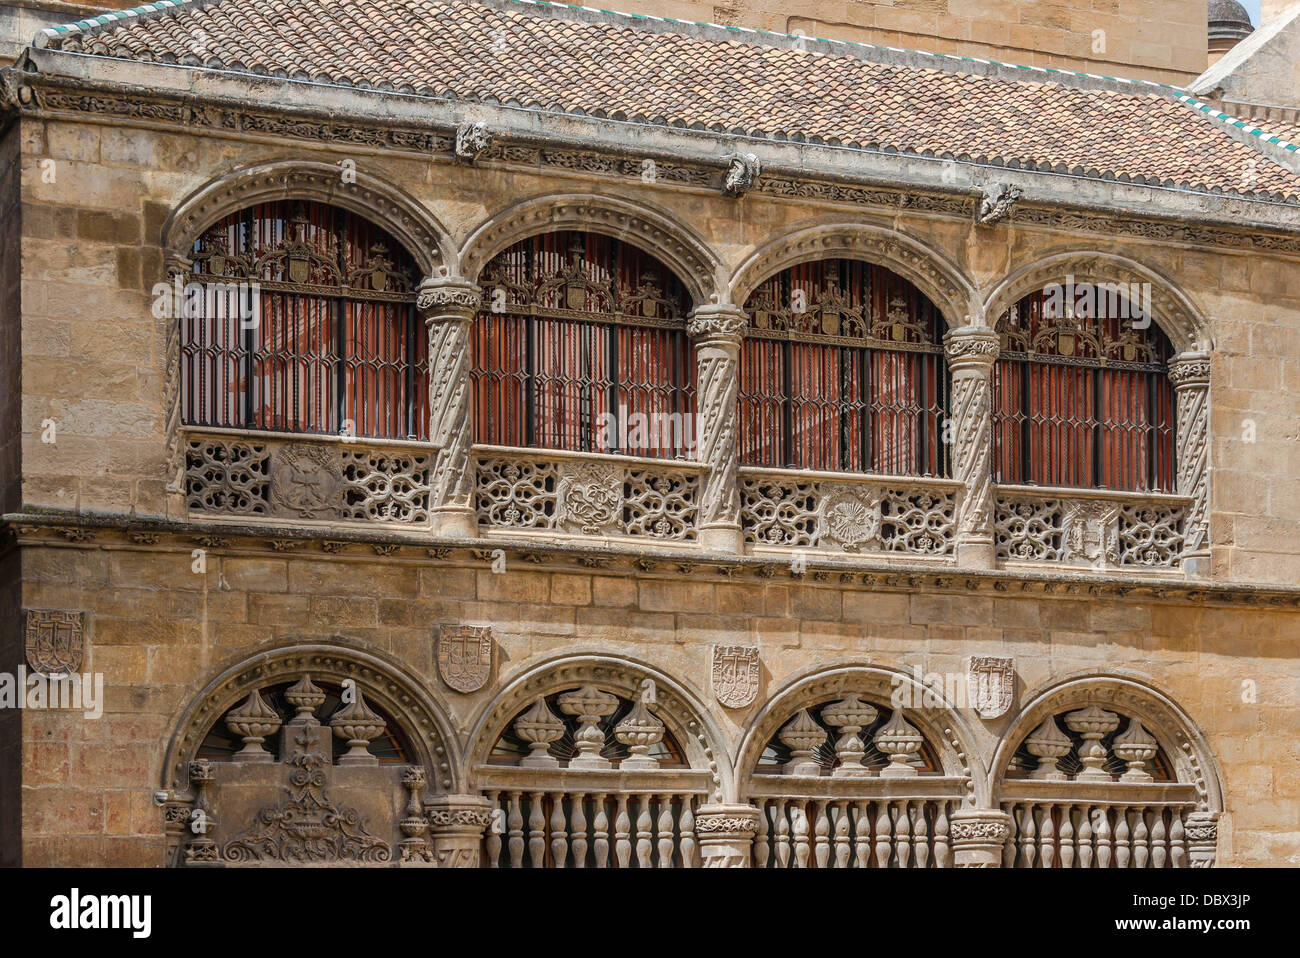 La galerie supérieure, un moyen de la "Capilla Real', où le "rois catholiques" sont enterrés. Granada, Espagne. Banque D'Images